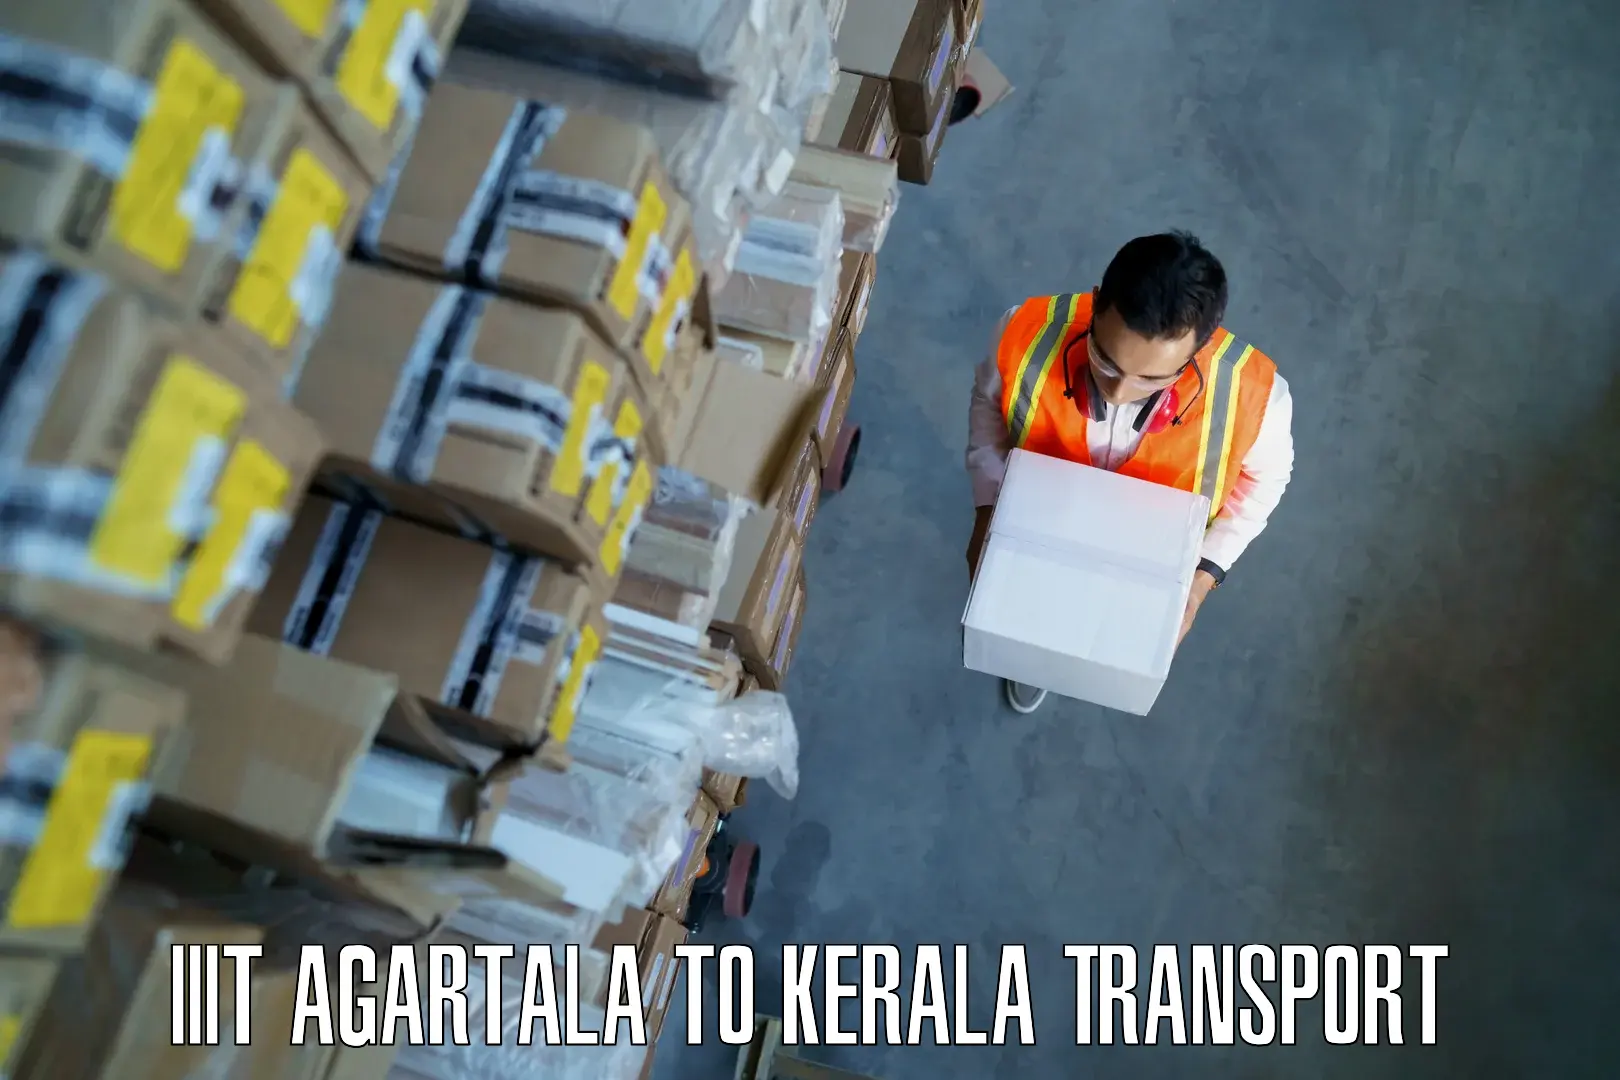 Truck transport companies in India IIIT Agartala to Kuttiady